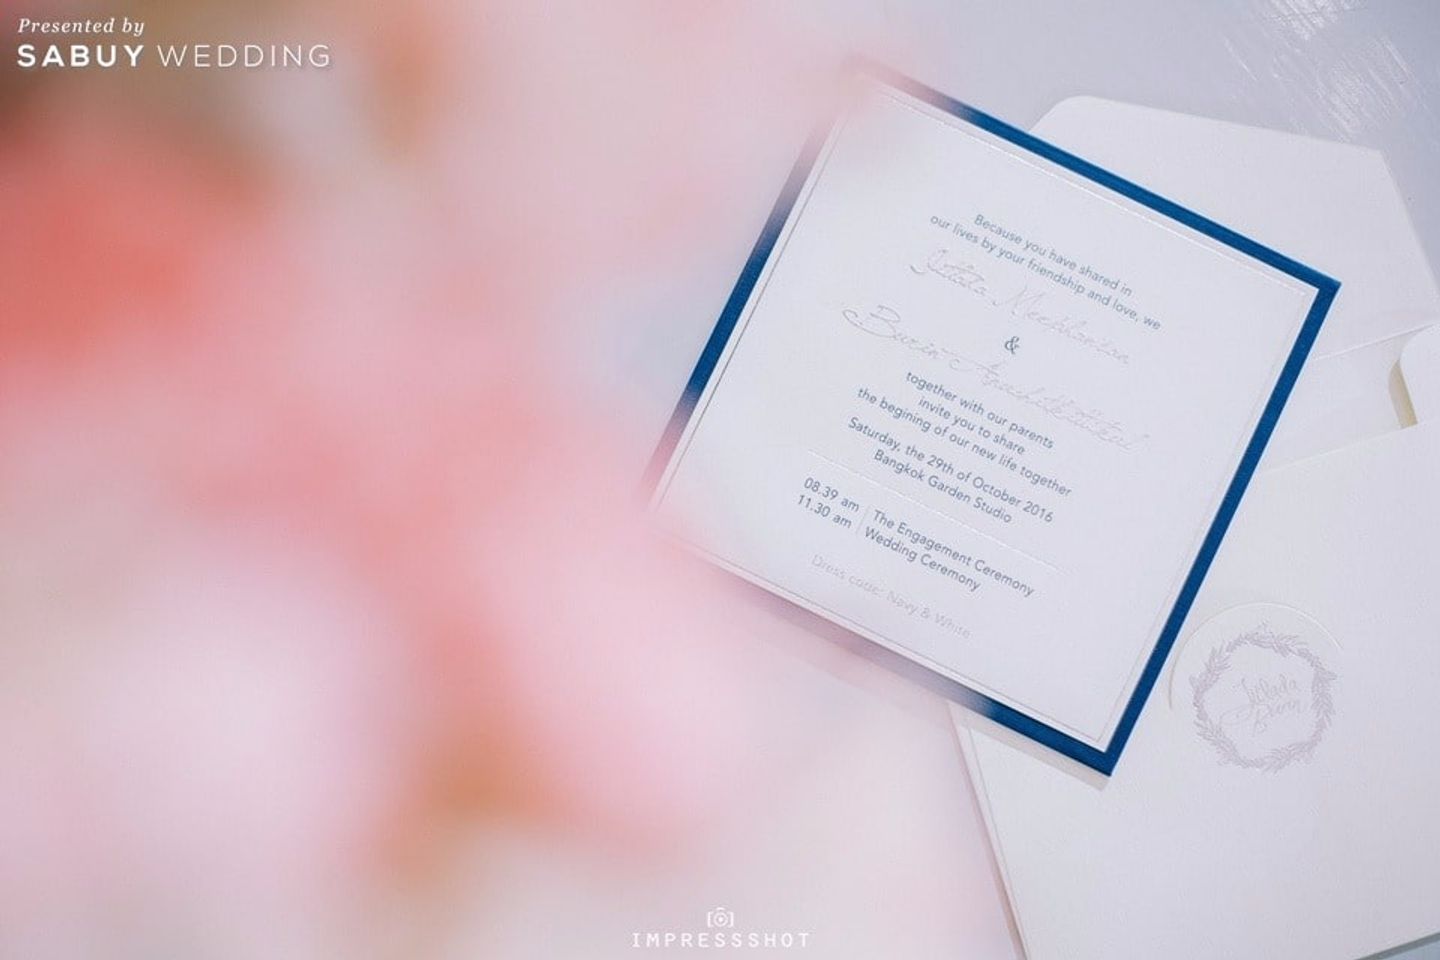 การ์ดแต่งงาน รีวิวงานแต่งสวยหรูด้วย Long table หวานซึ้งสื่อรักดอกลาเวนเดอร์ @Bangkok Garden Studio